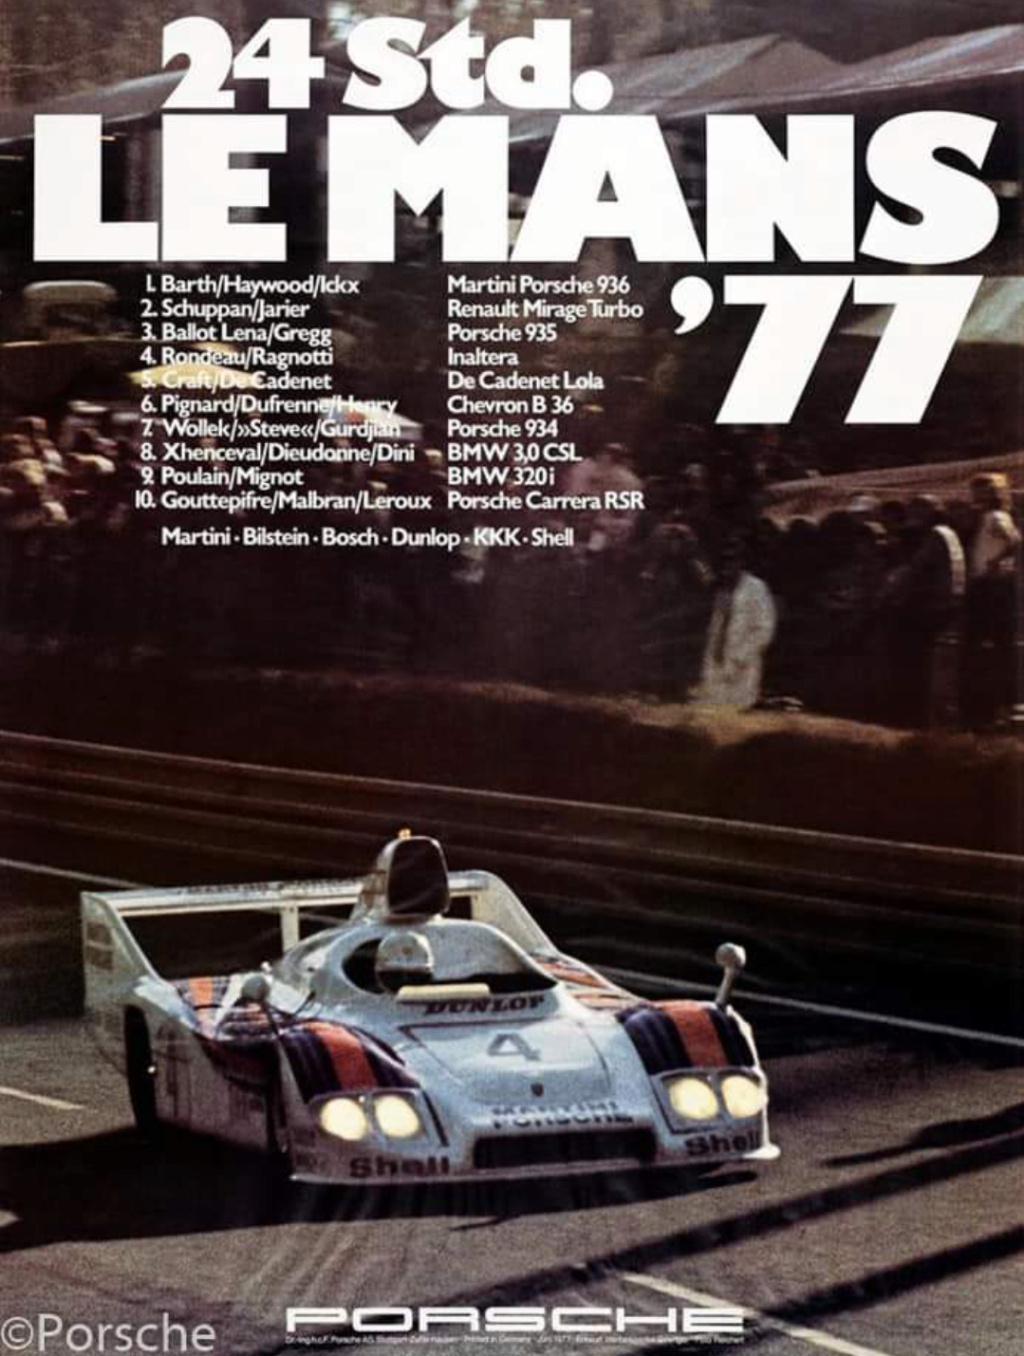 Affiches Porsche dans la course Automobile - Page 3 Scree195